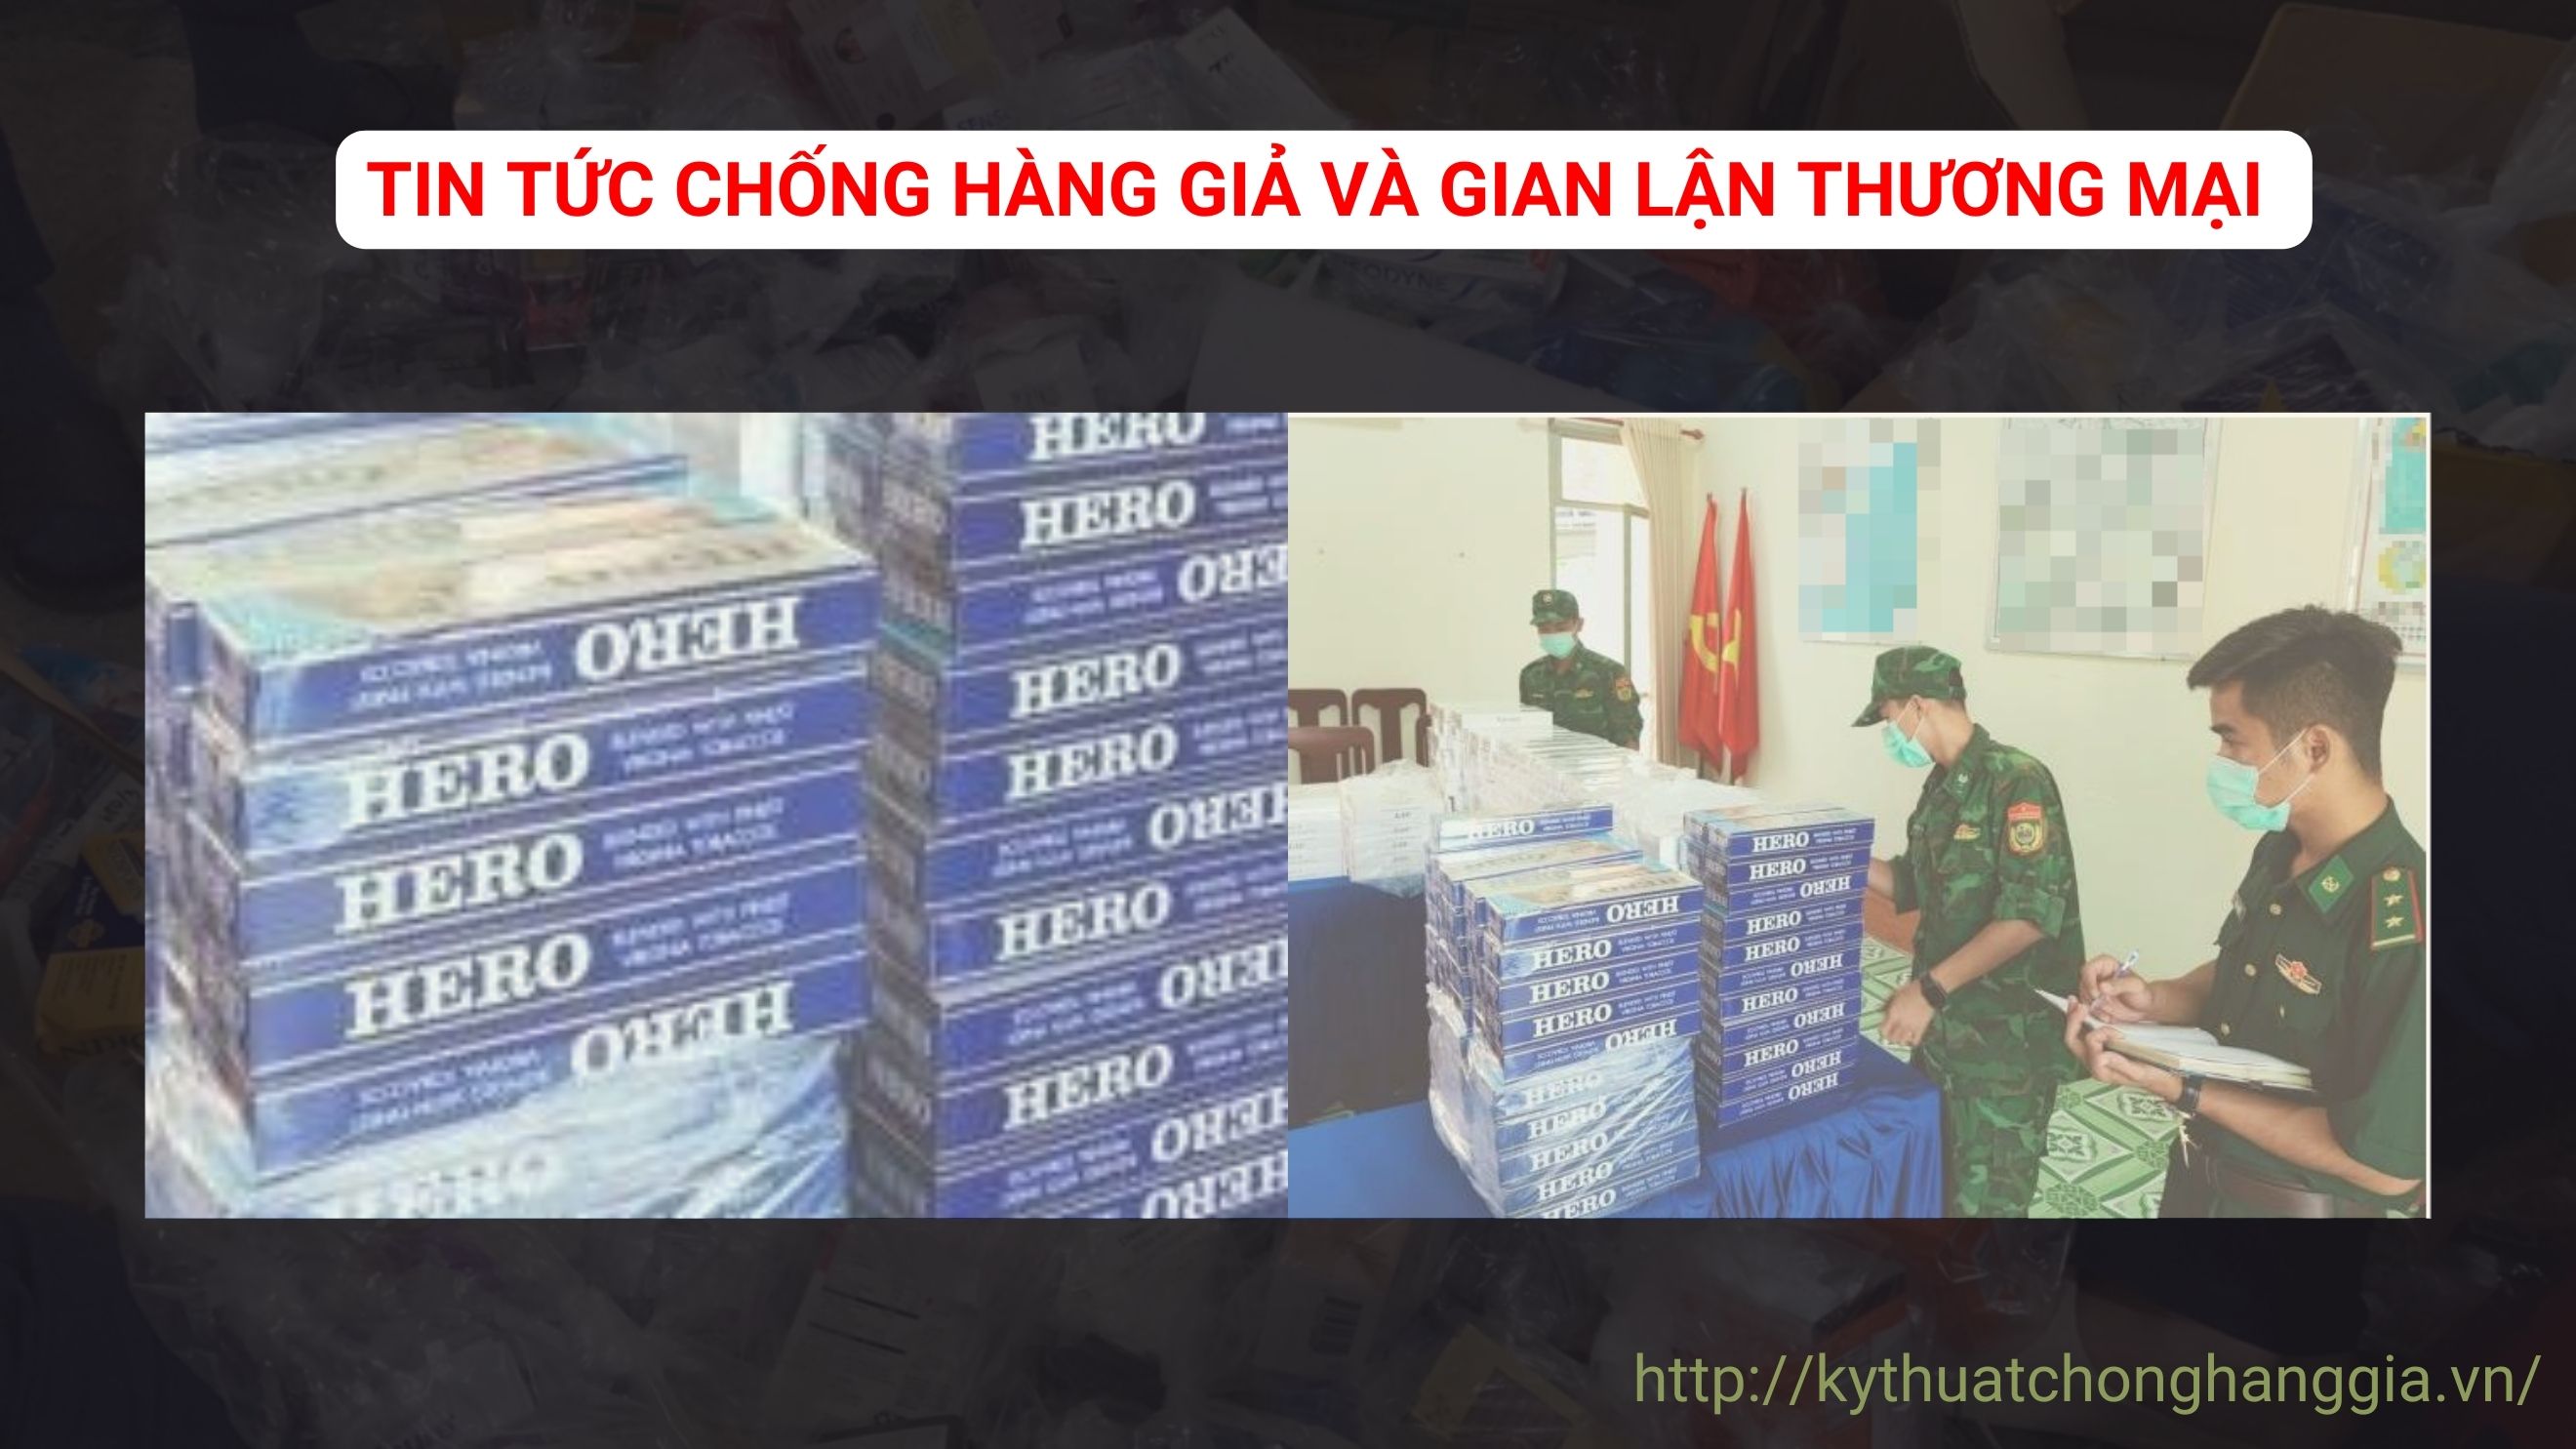 Bắt vụ vận chuyển gần 3.500 gói thuốc lá ngoại nhập lậu ở An Giang